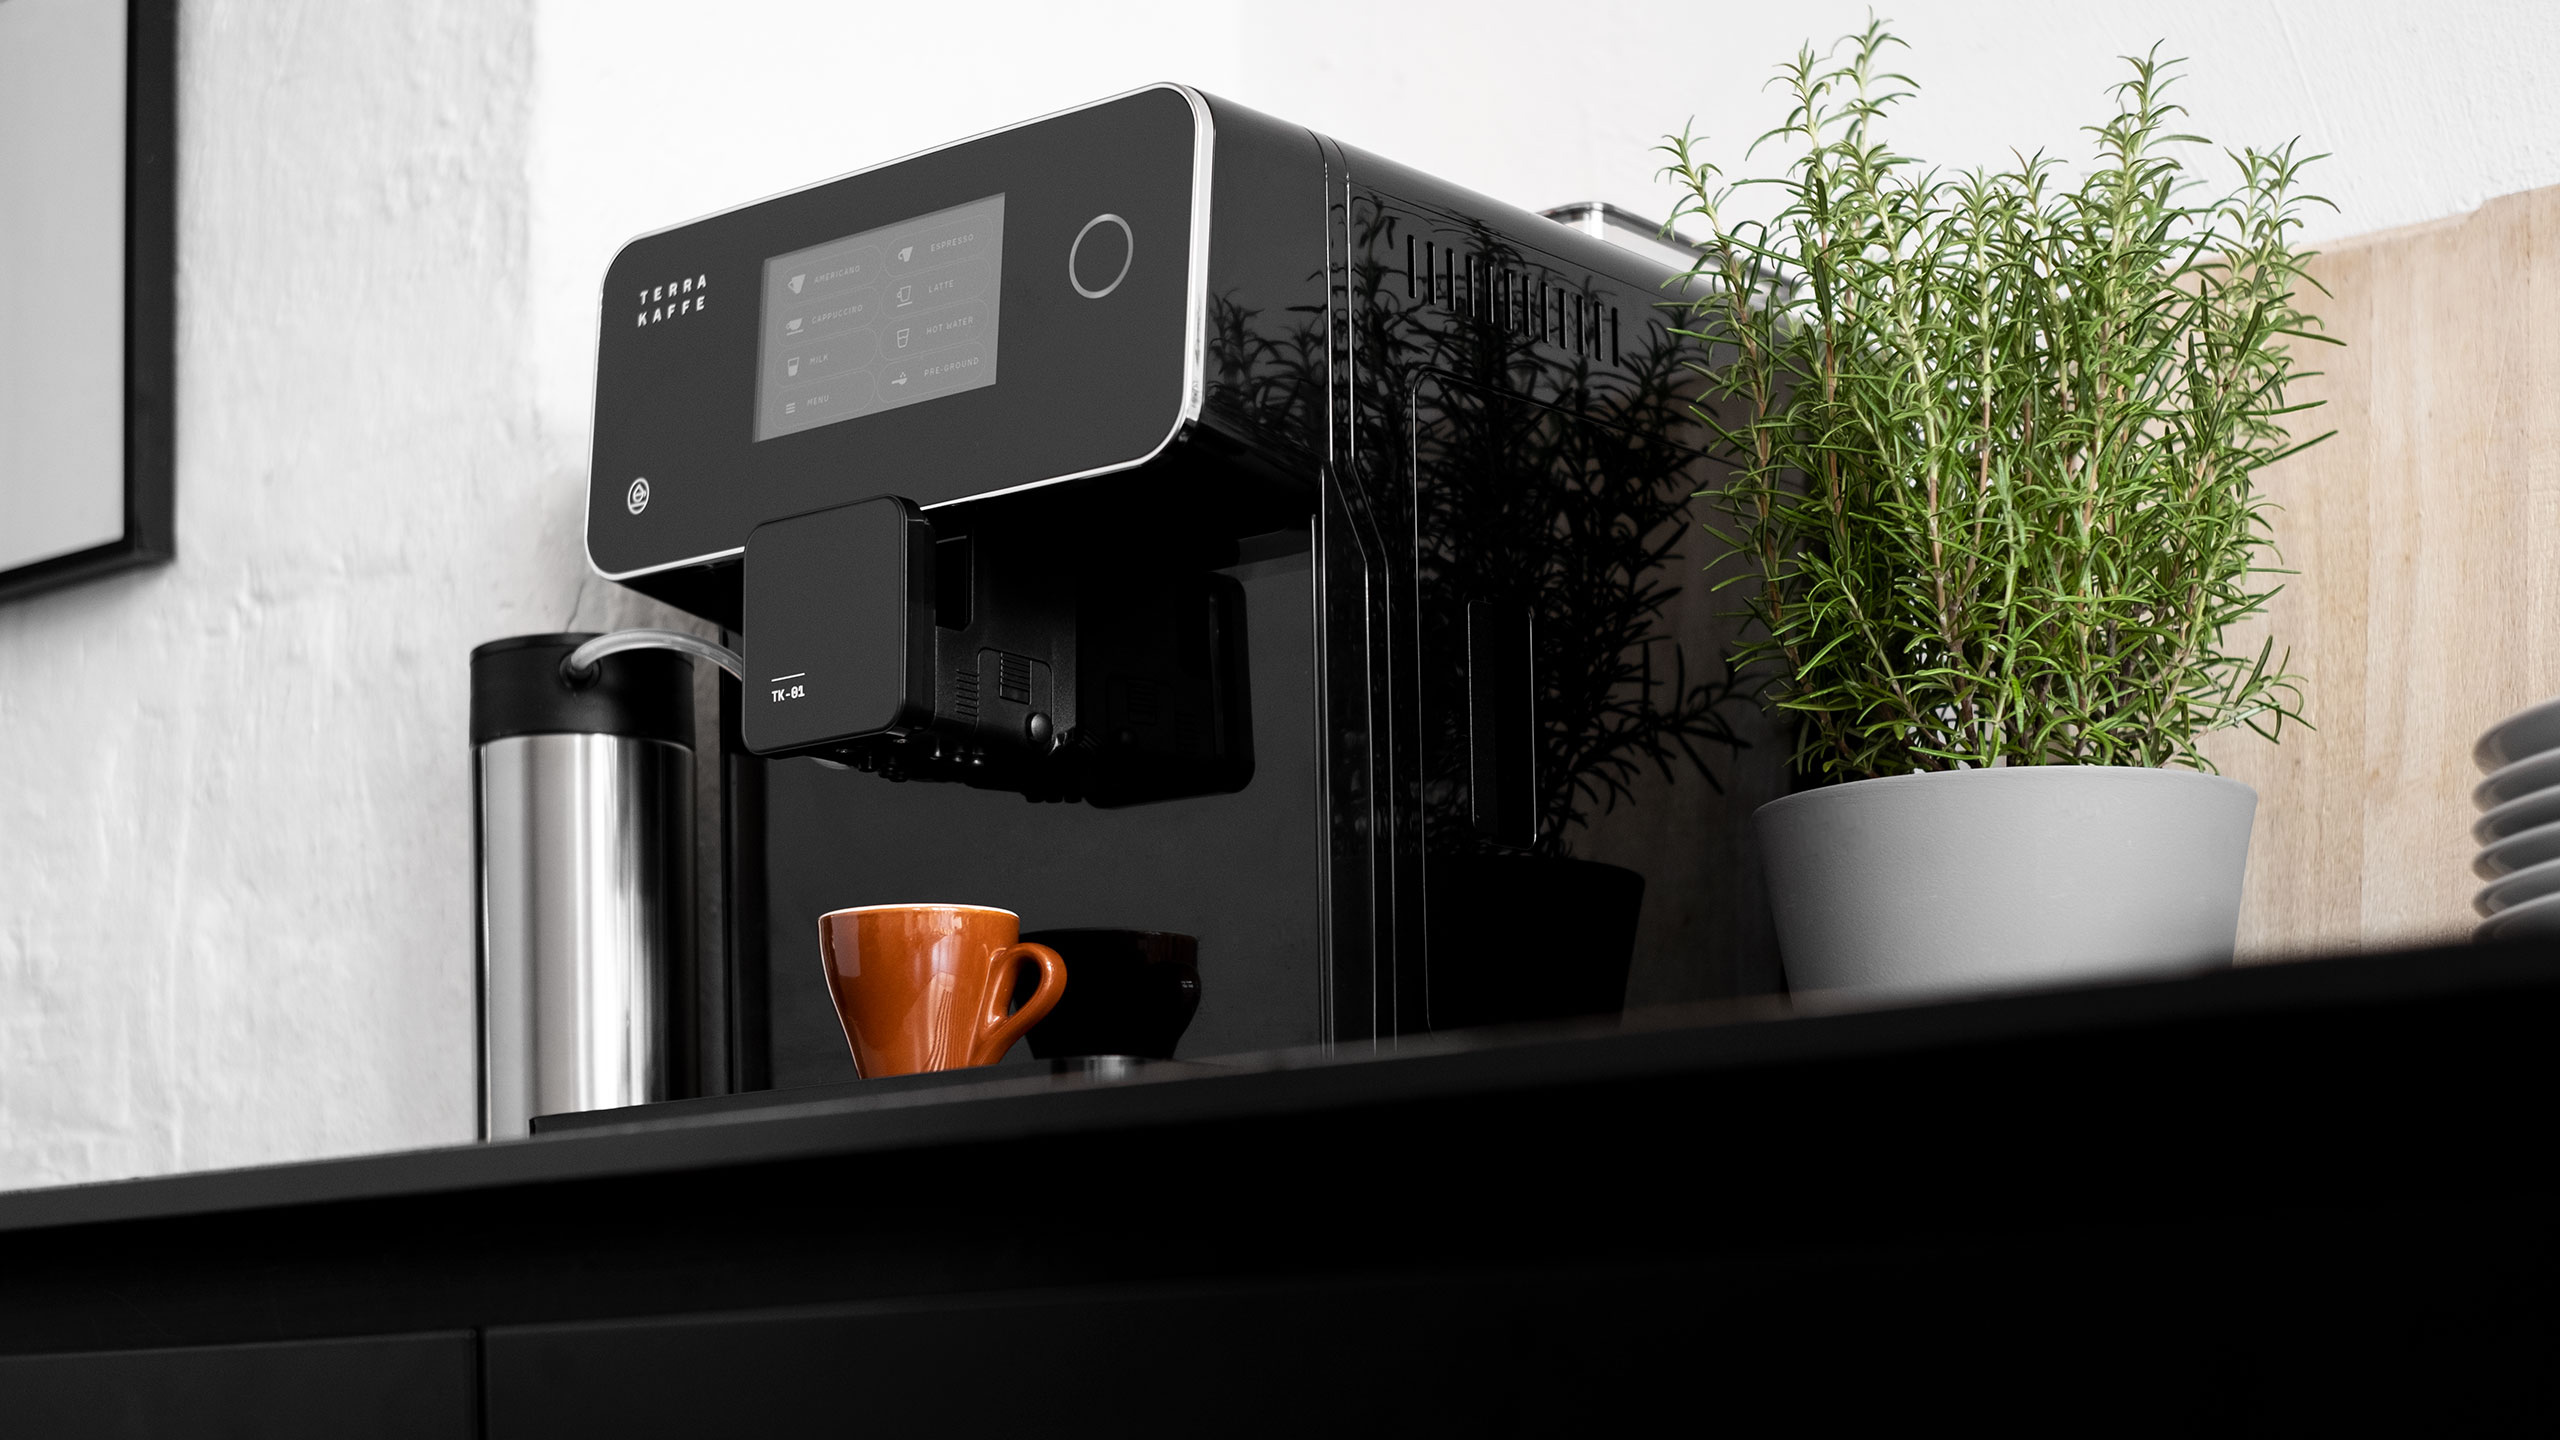 Terra kaffe espresso machine reviews